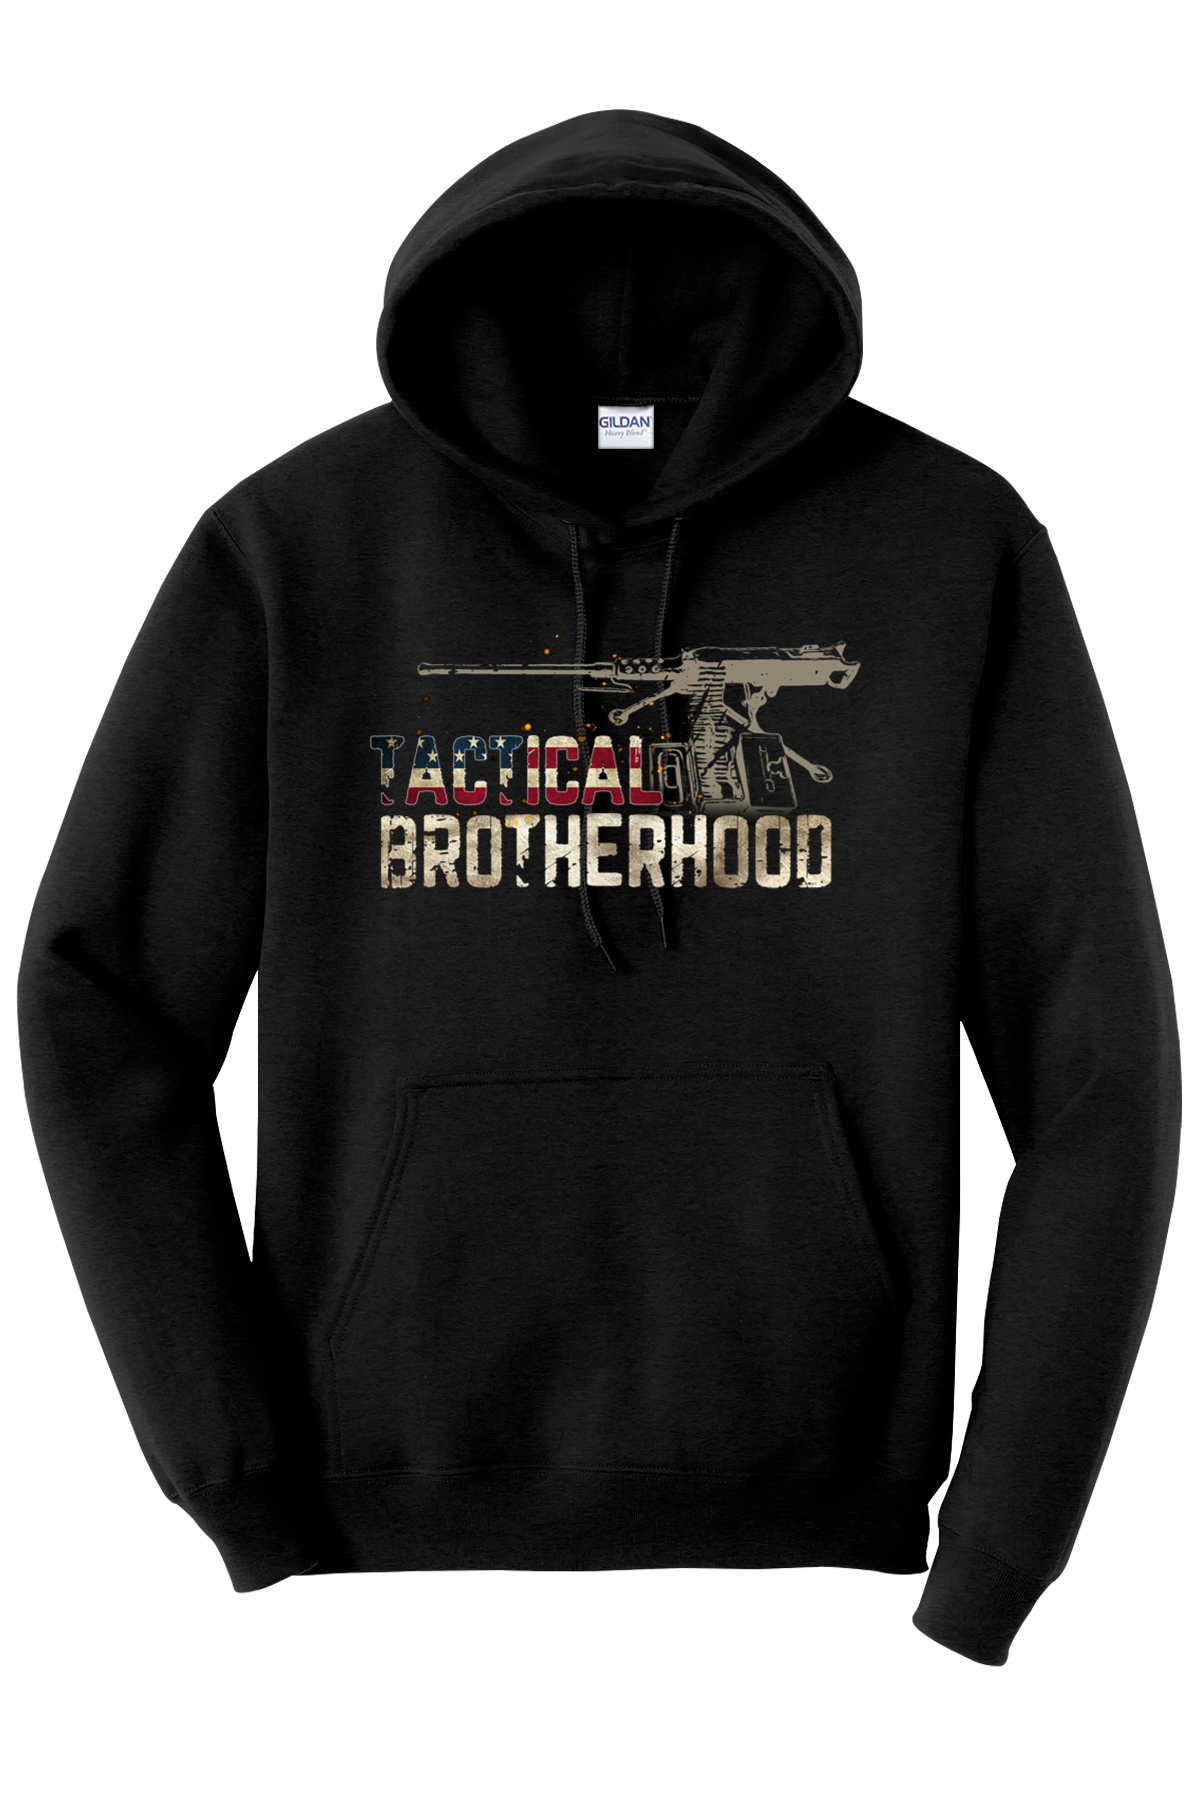 M2 50 Cal - Tactical Brotherhood Hoodie